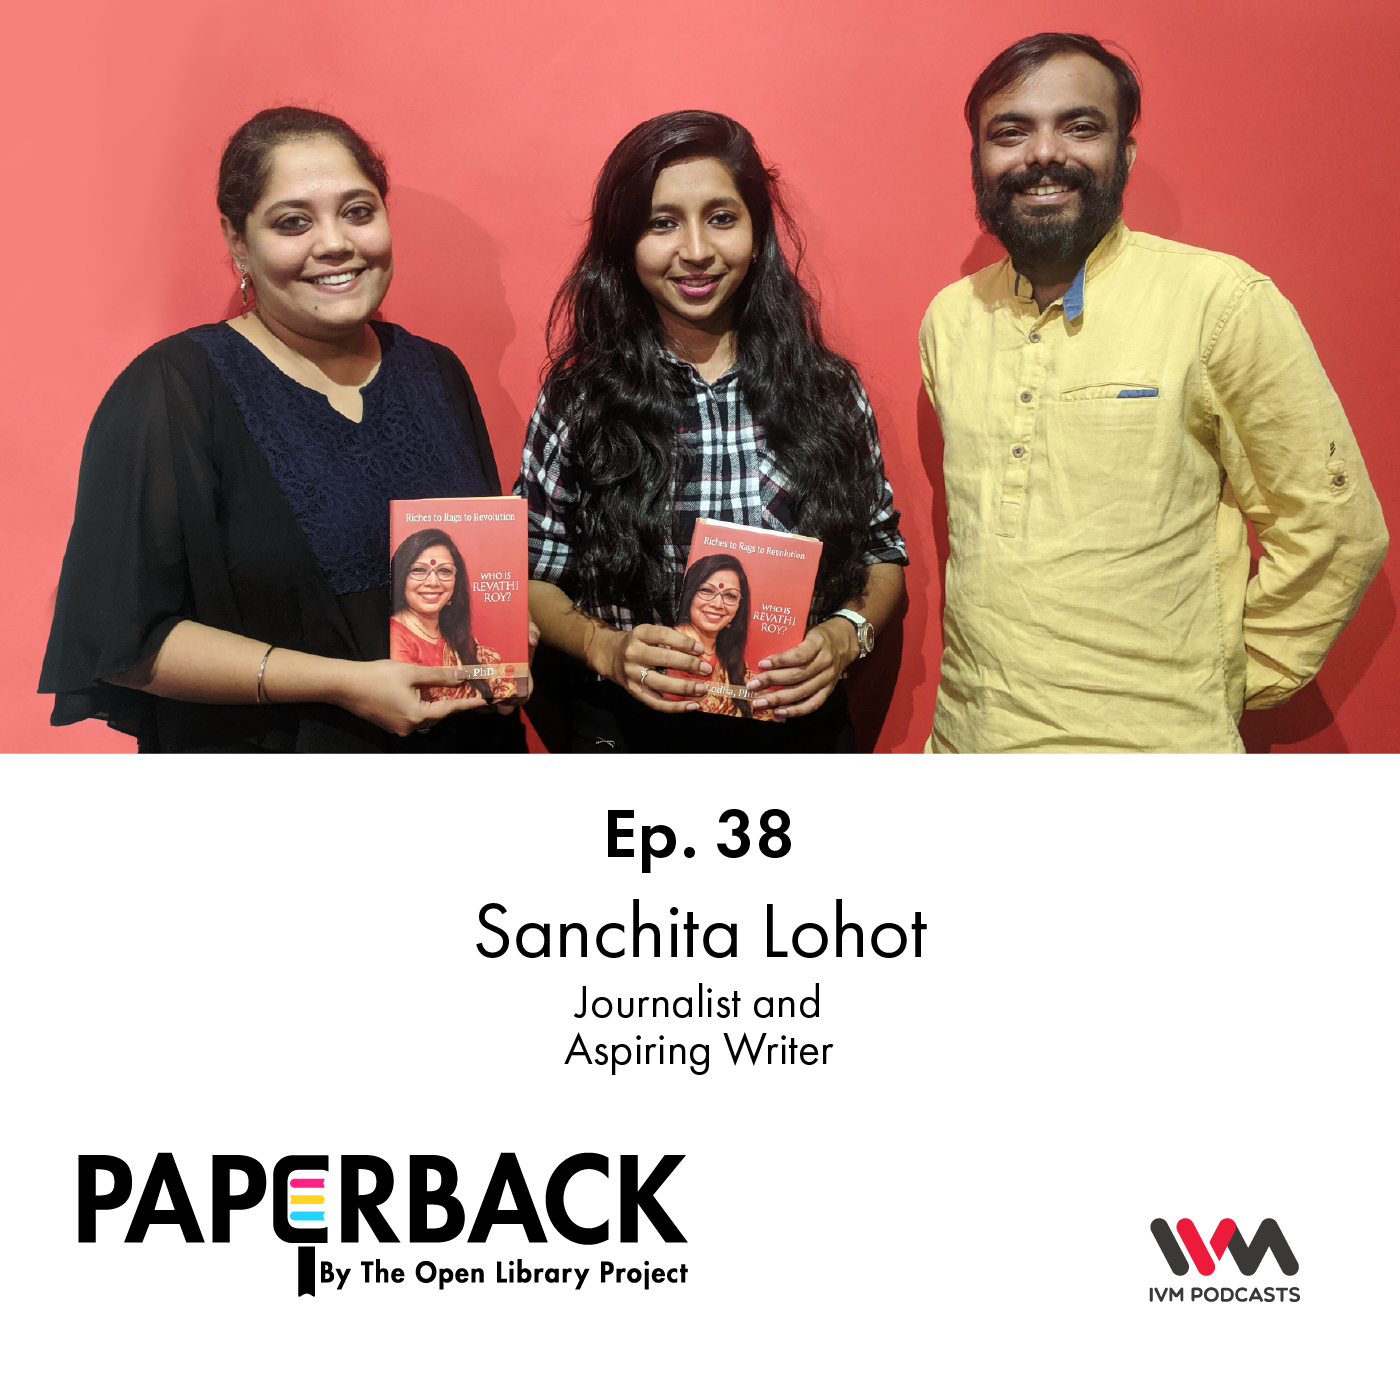 Ep. 38: Sanchita Lohot